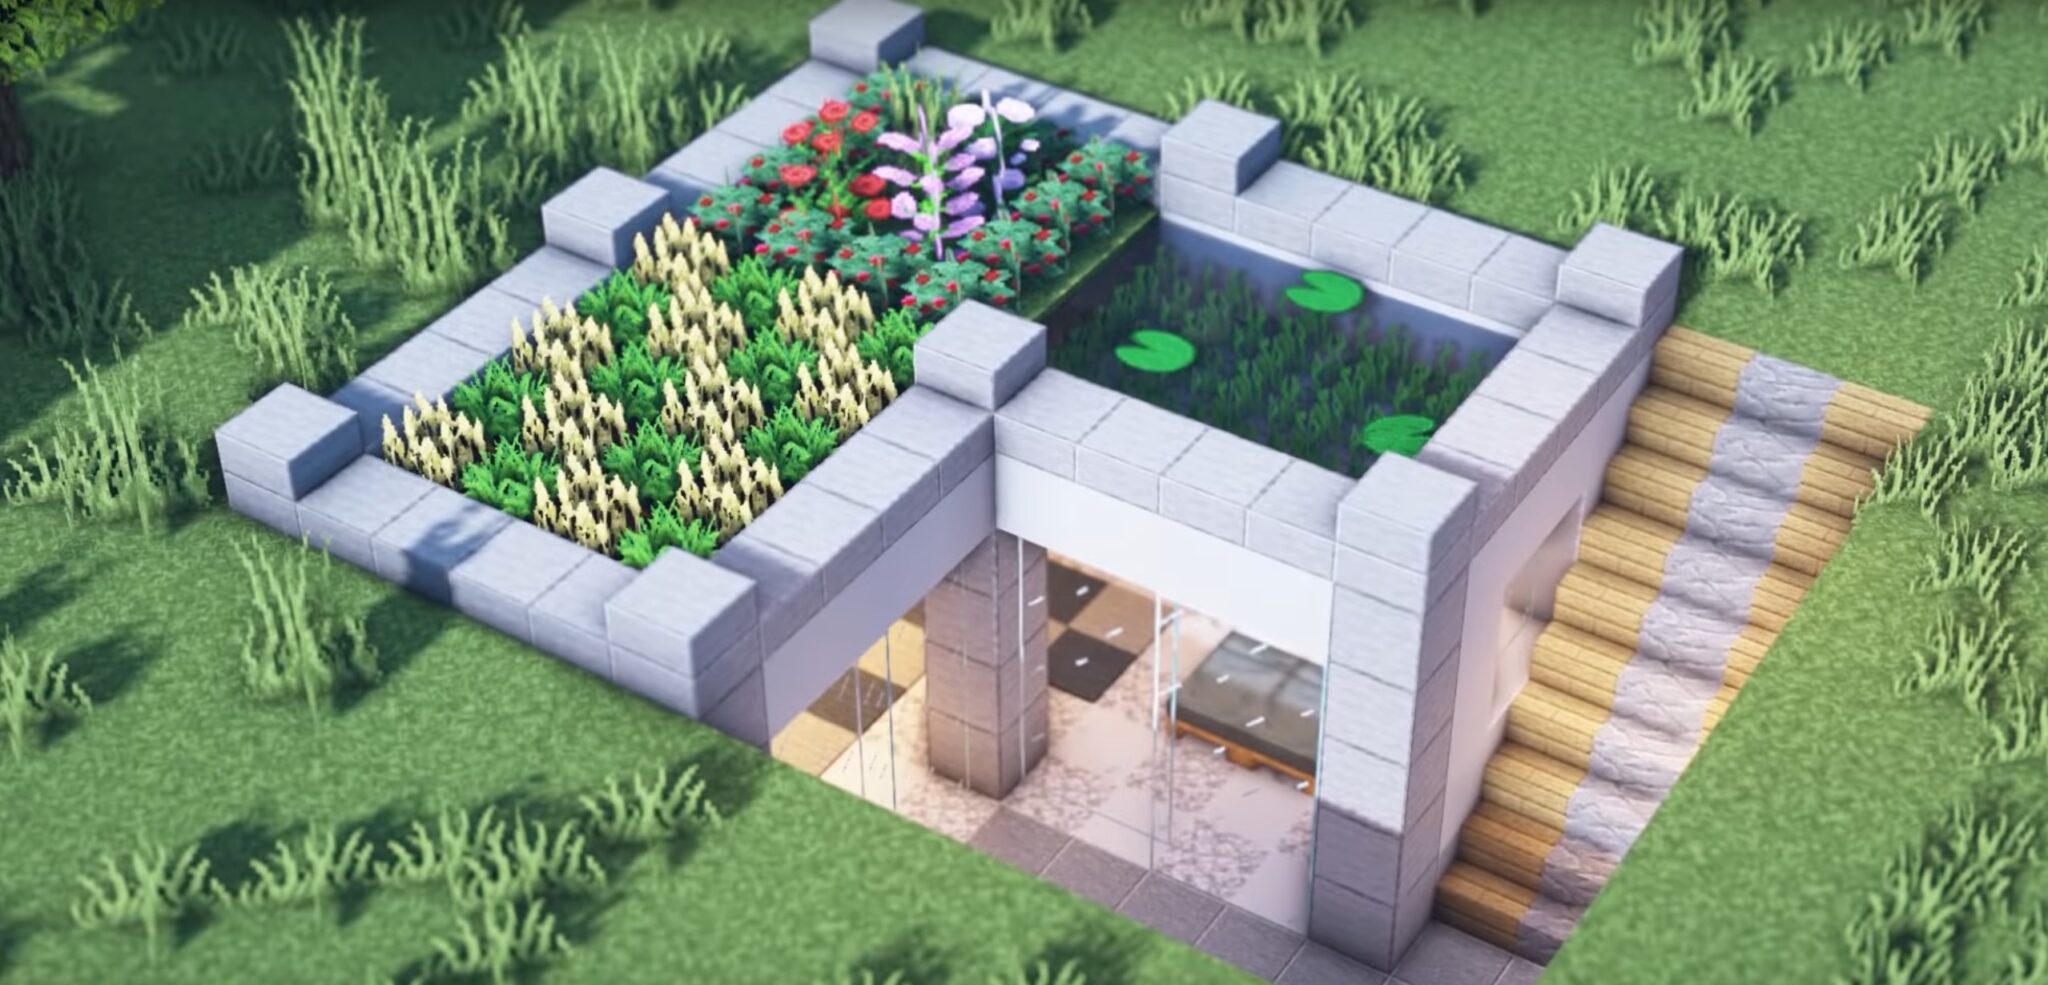 Underground House Design Minecraft Minecraft How To Build An Underground Base Tutorial Bluenerd